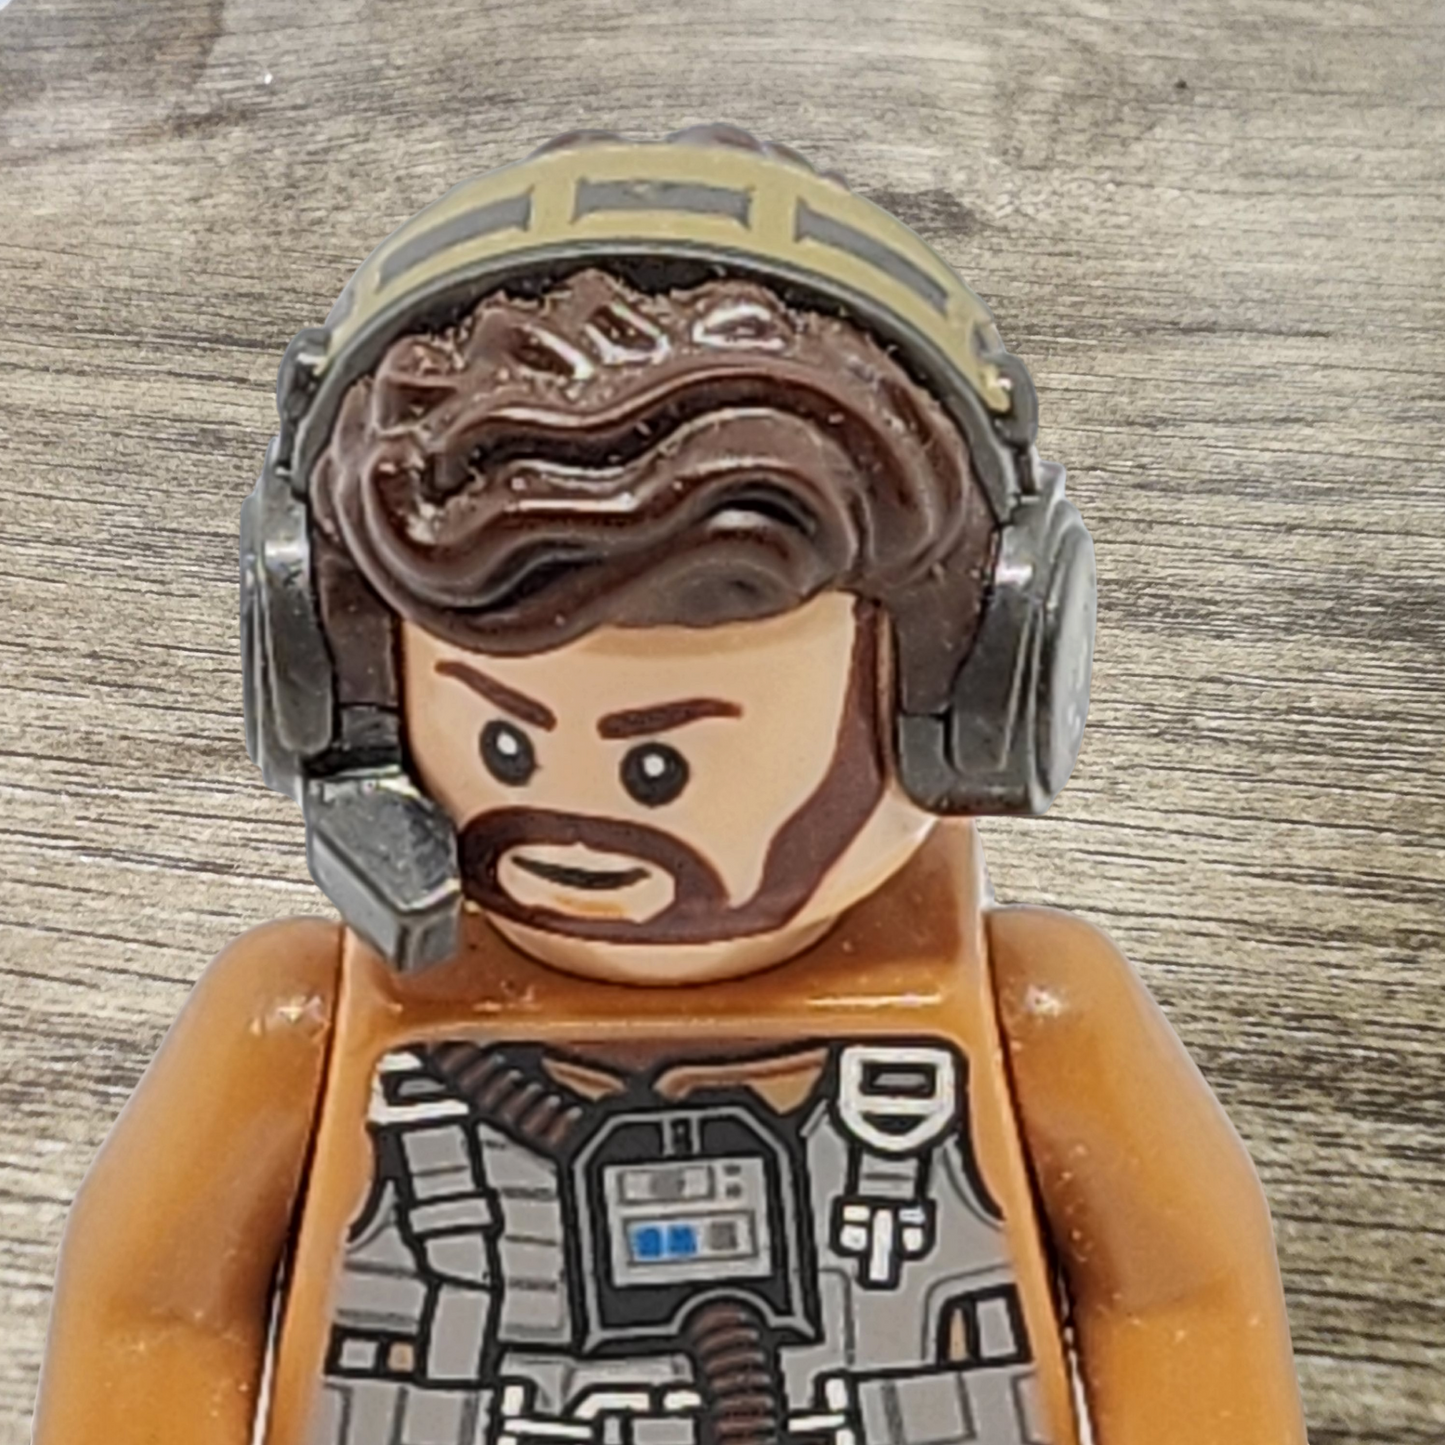 Resistance Speeder Pilot Minifigure Lego sw0883 Star Wars 75195